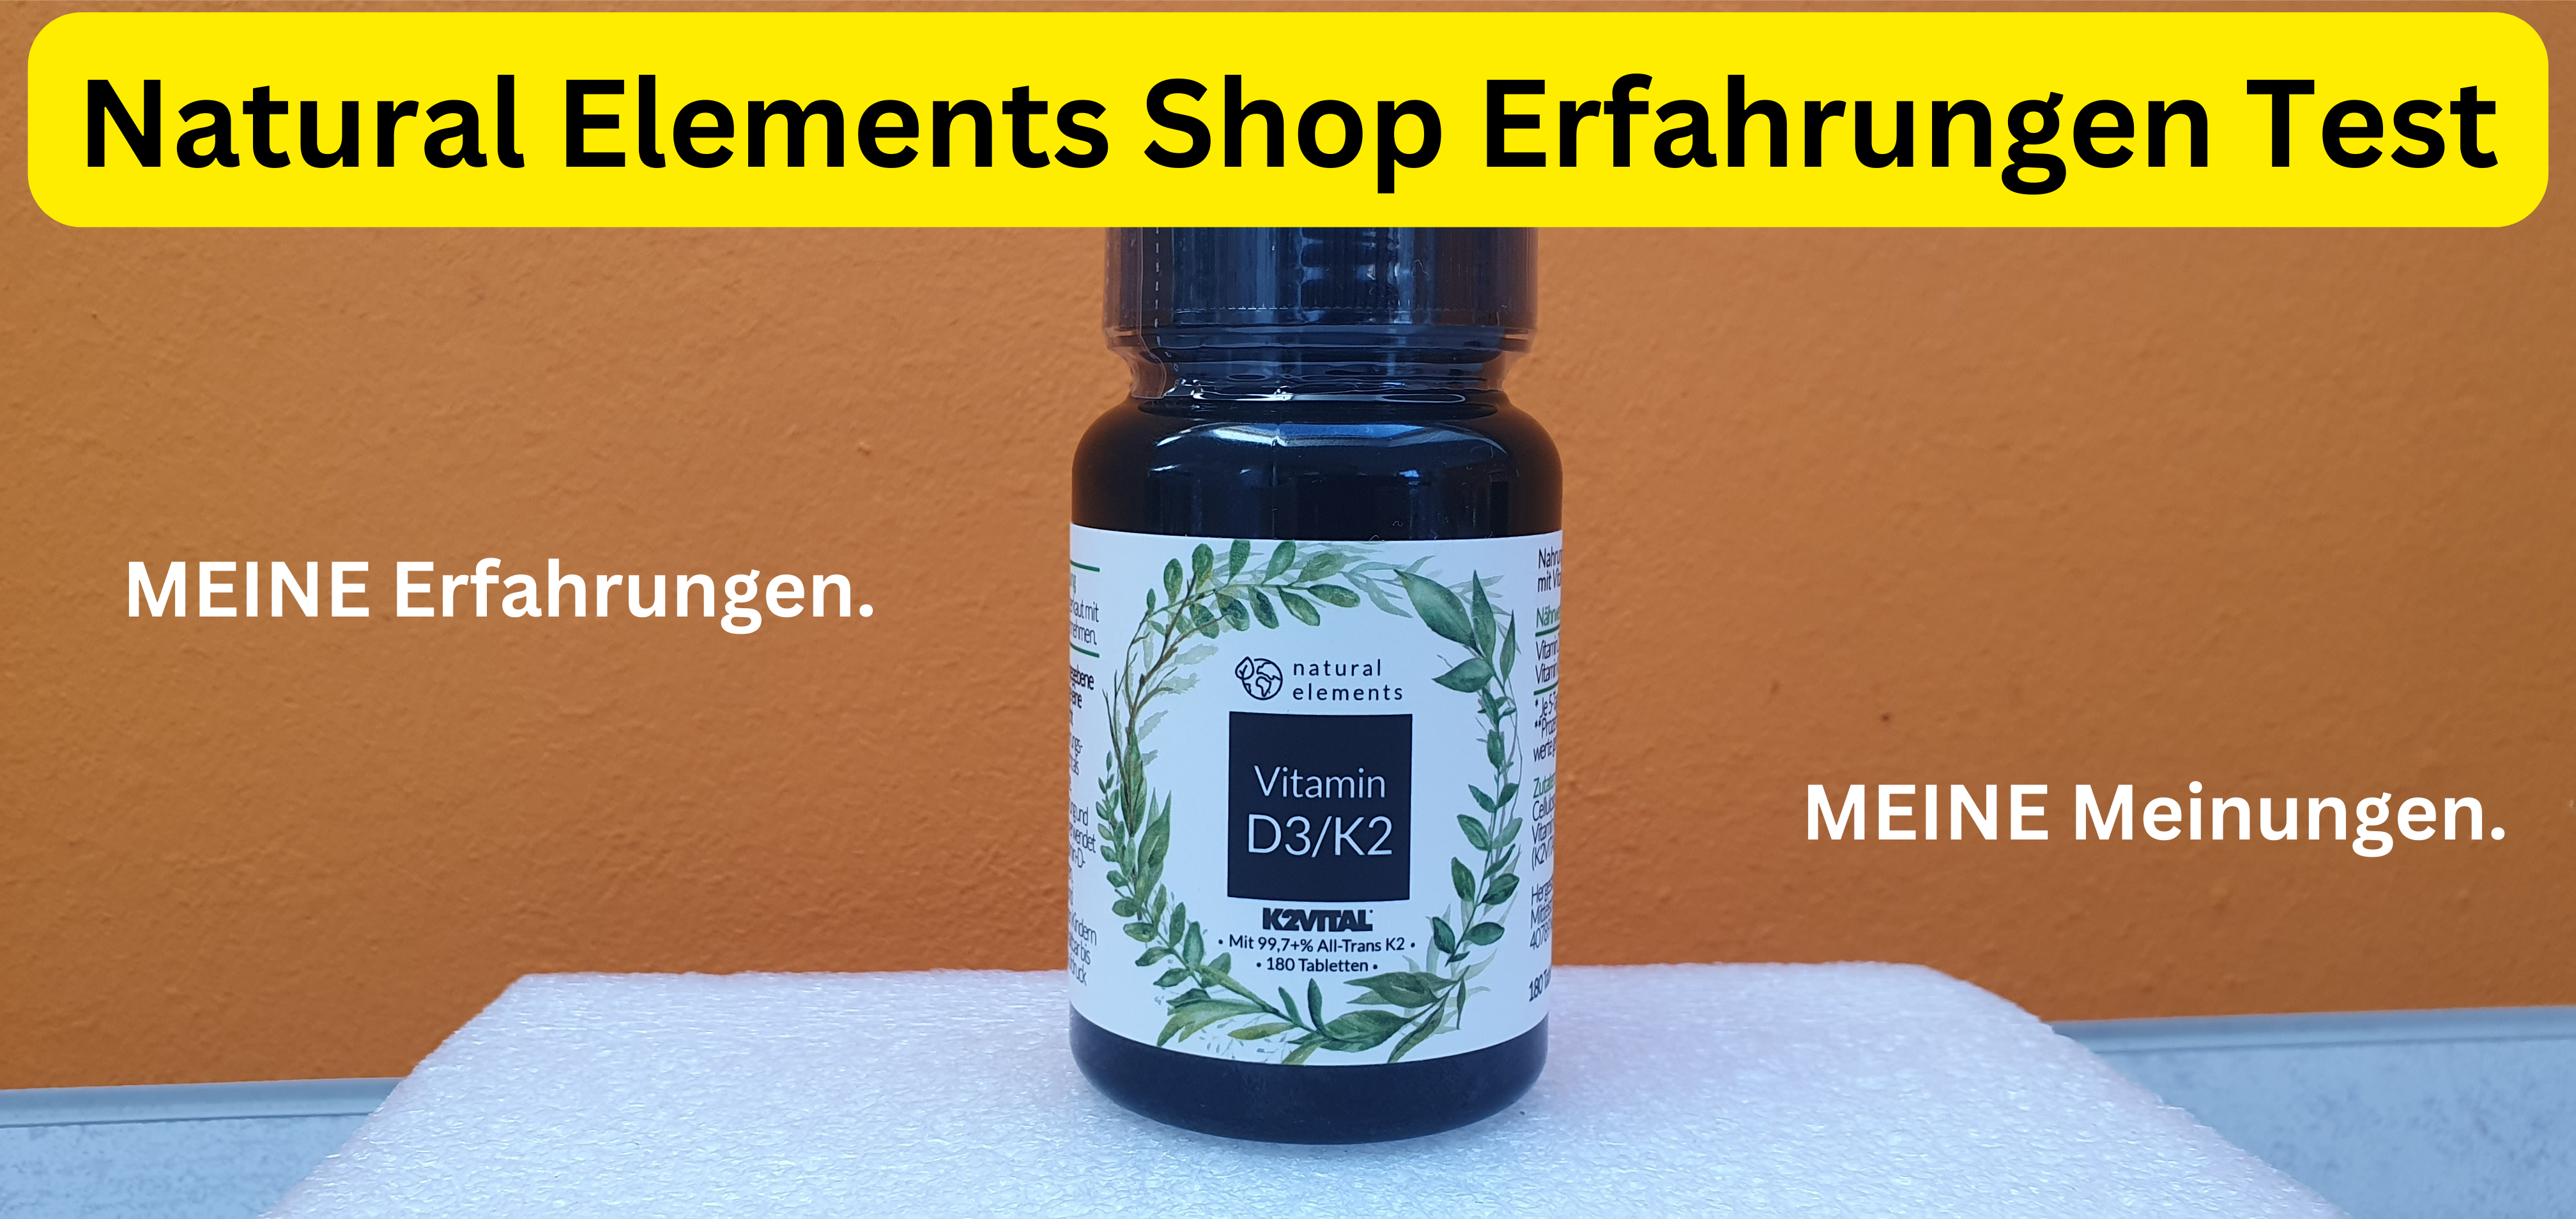 Natural Elements GmbH Shop Kauf Erfahrungsbericht. Kundenmeinung. MEINE Meinung.